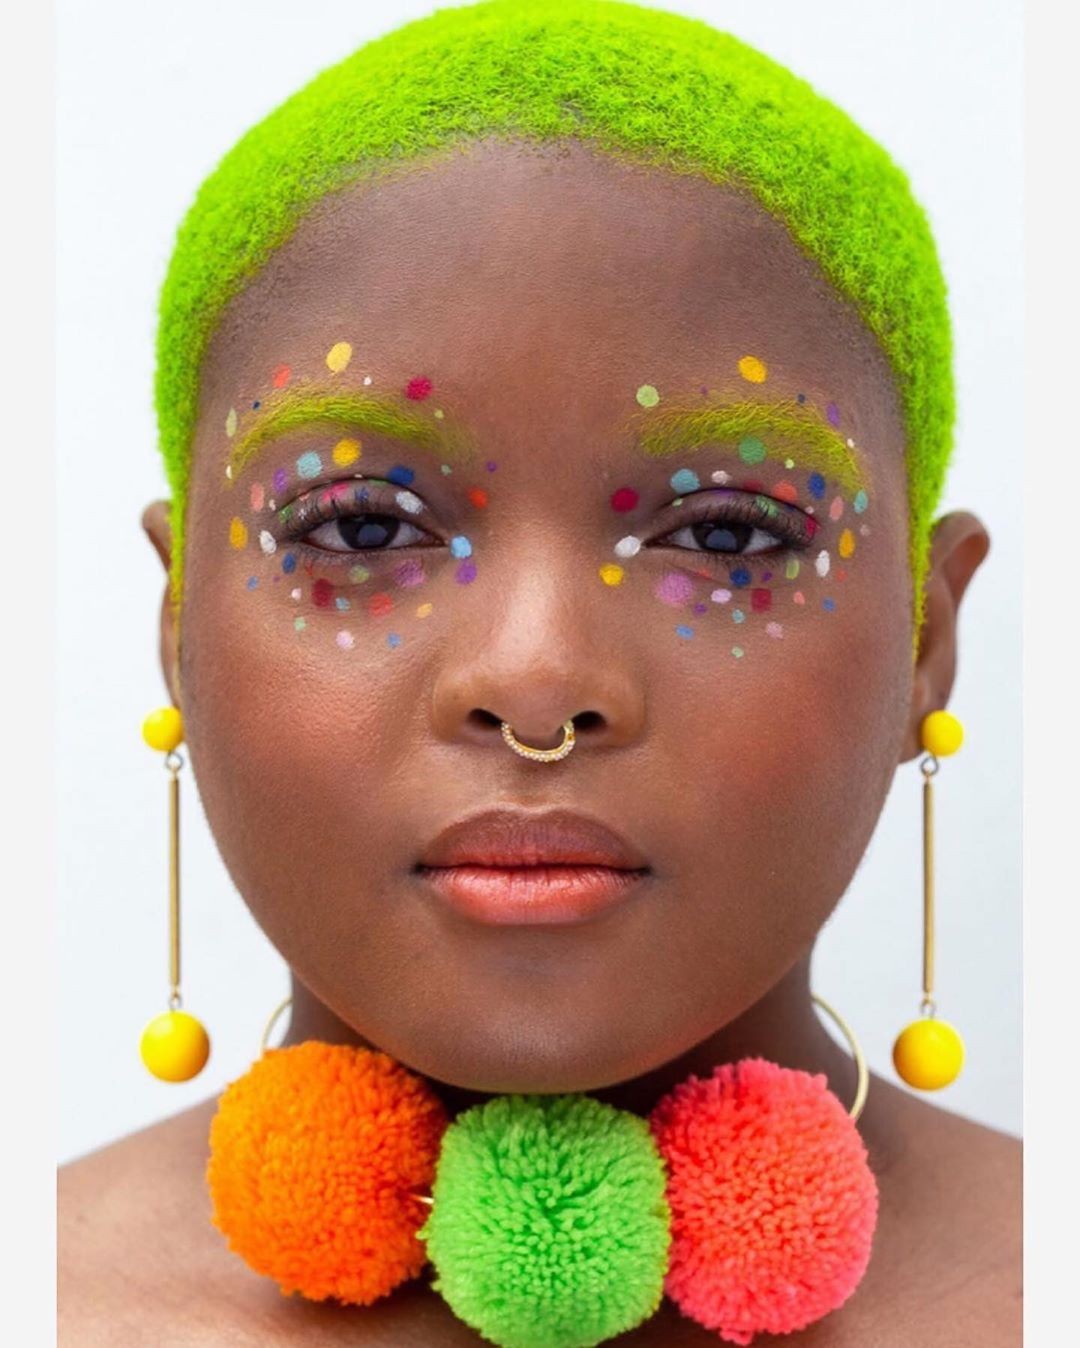 Maquiagem colorida carnaval (Foto: Reprodução / Instagram @theartistedit)